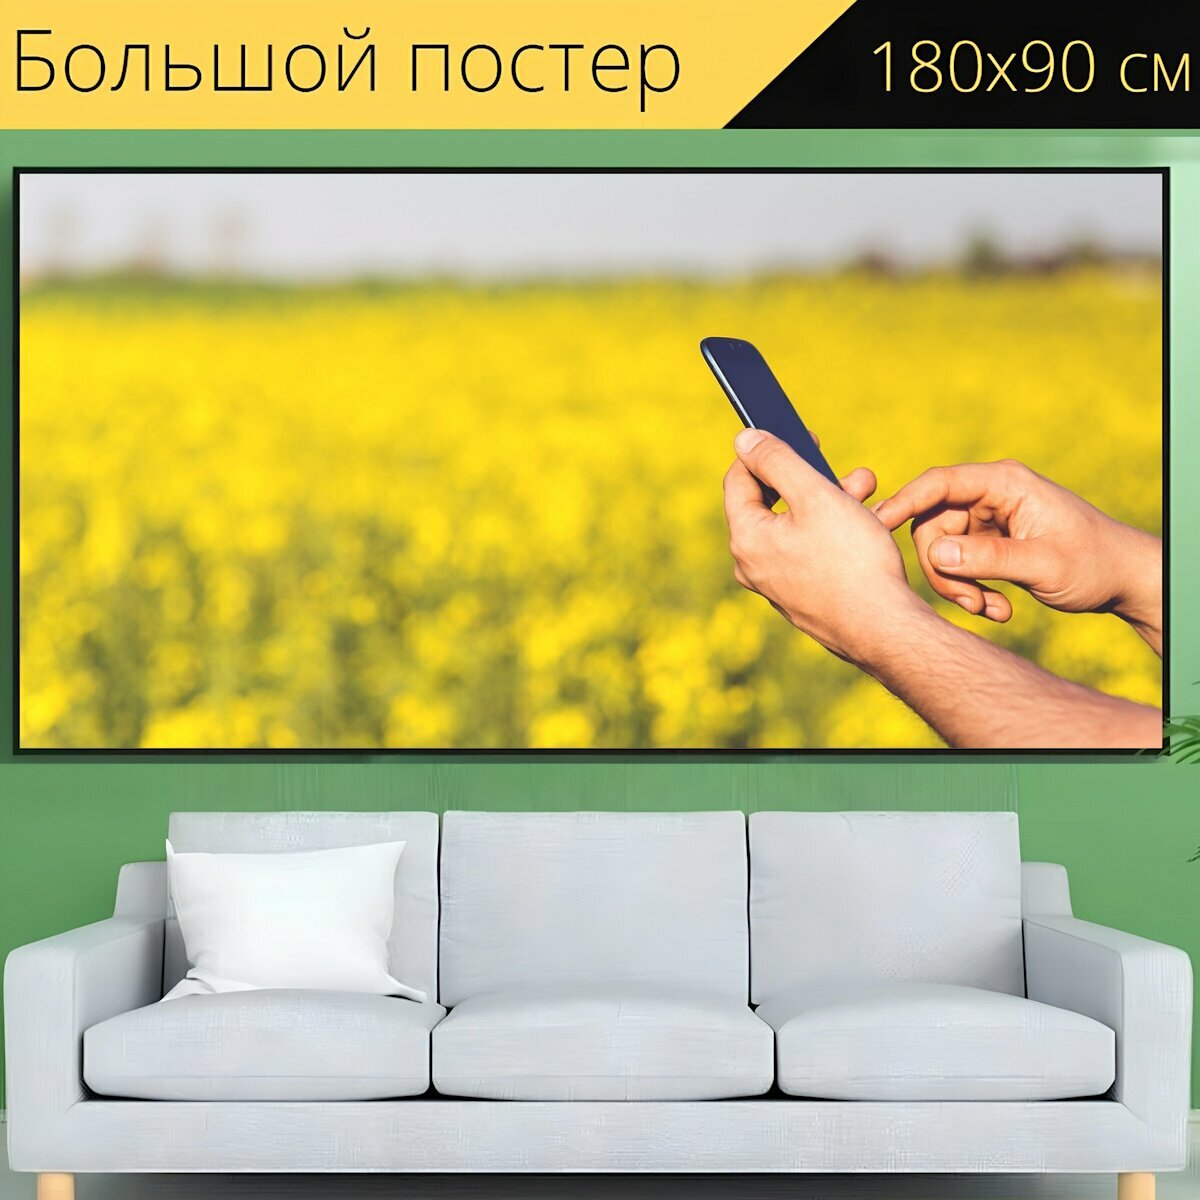 Большой постер "Смартфон, мобильный, мобильный телефон" 180 x 90 см. для интерьера